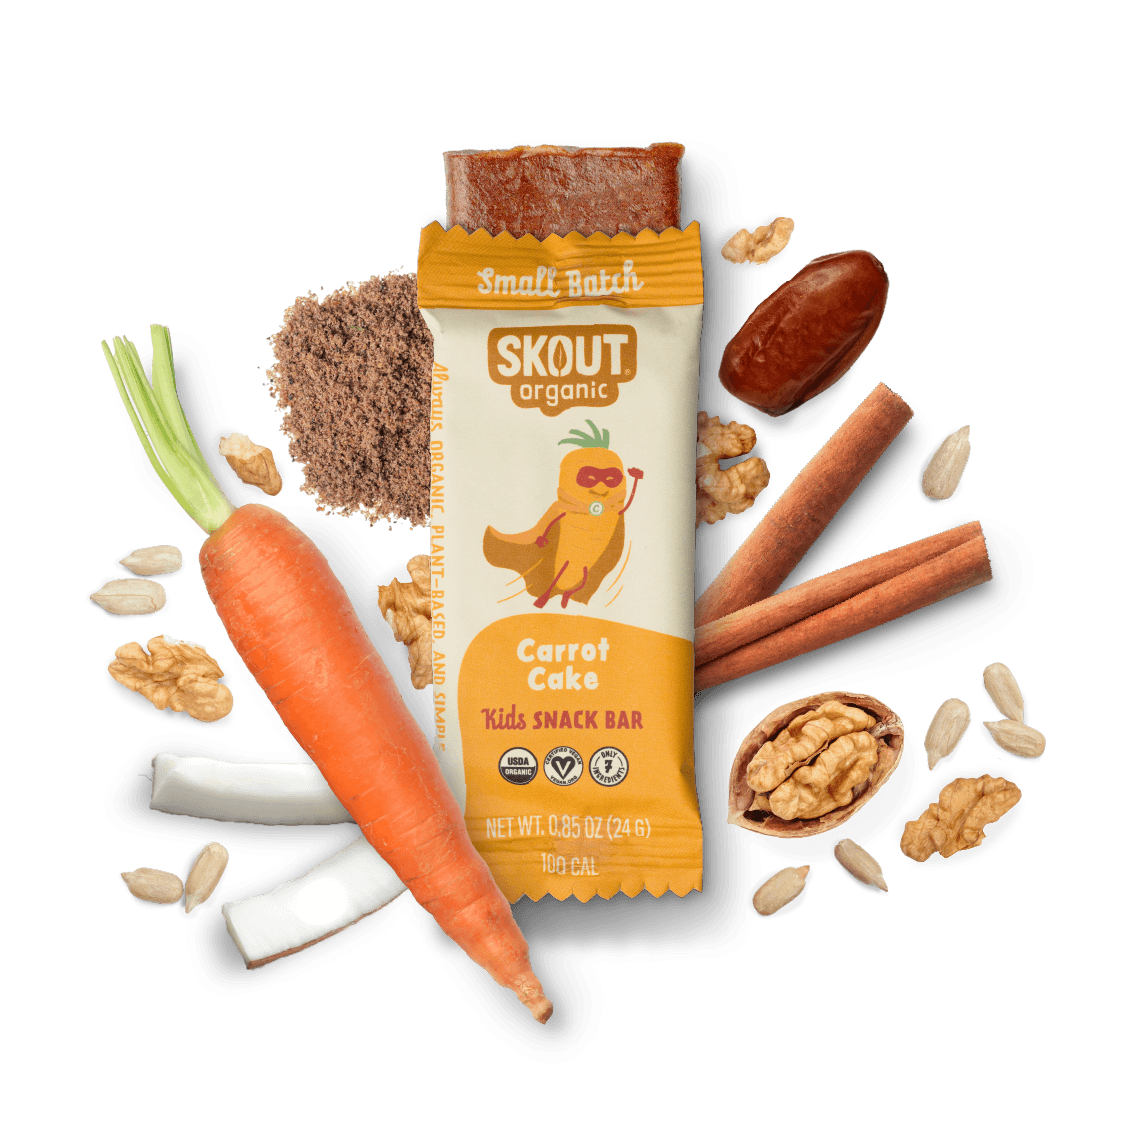 Carrot Cake Kids Bar Build Your Own Box - Single Bar Skout Organic Bar 